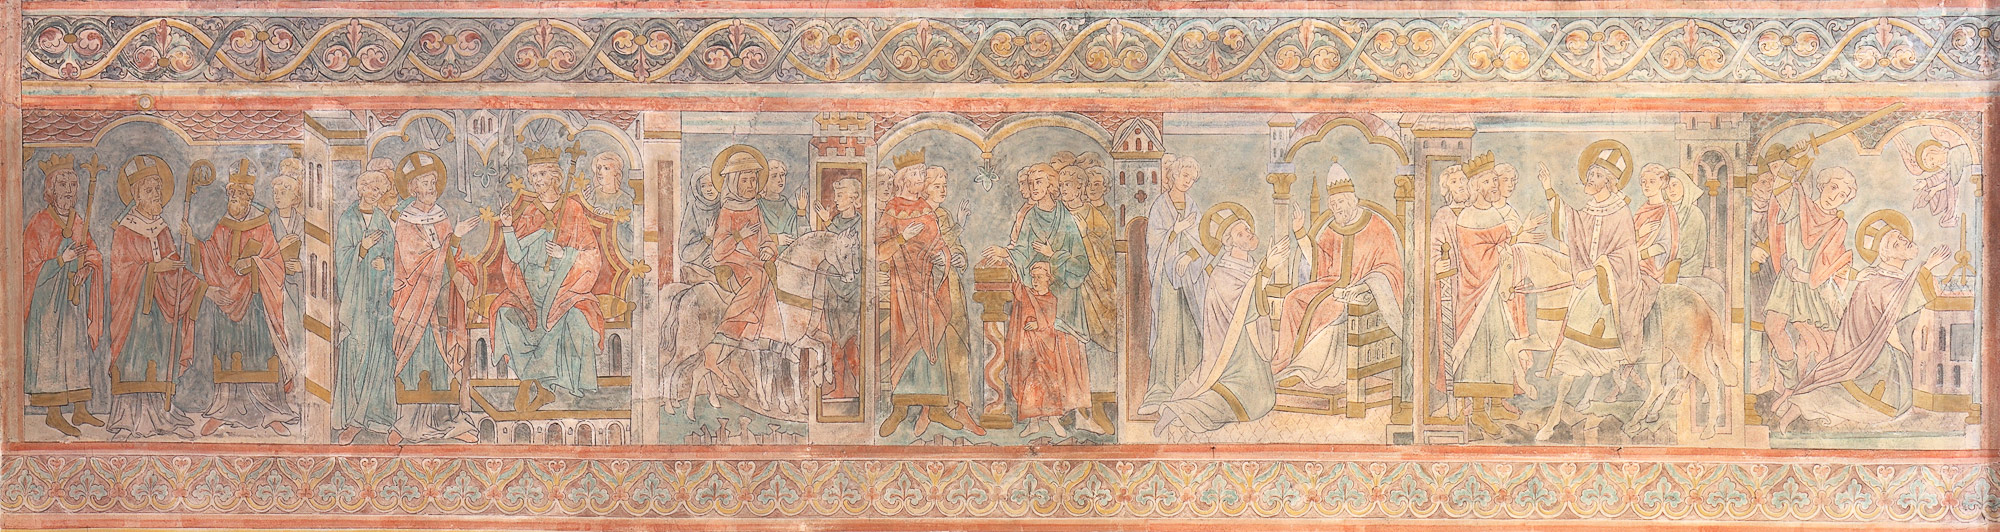 Thomas Beckett, Erzbischof von Canterbury - Wandmalereien im Hohen Chor, um 1250